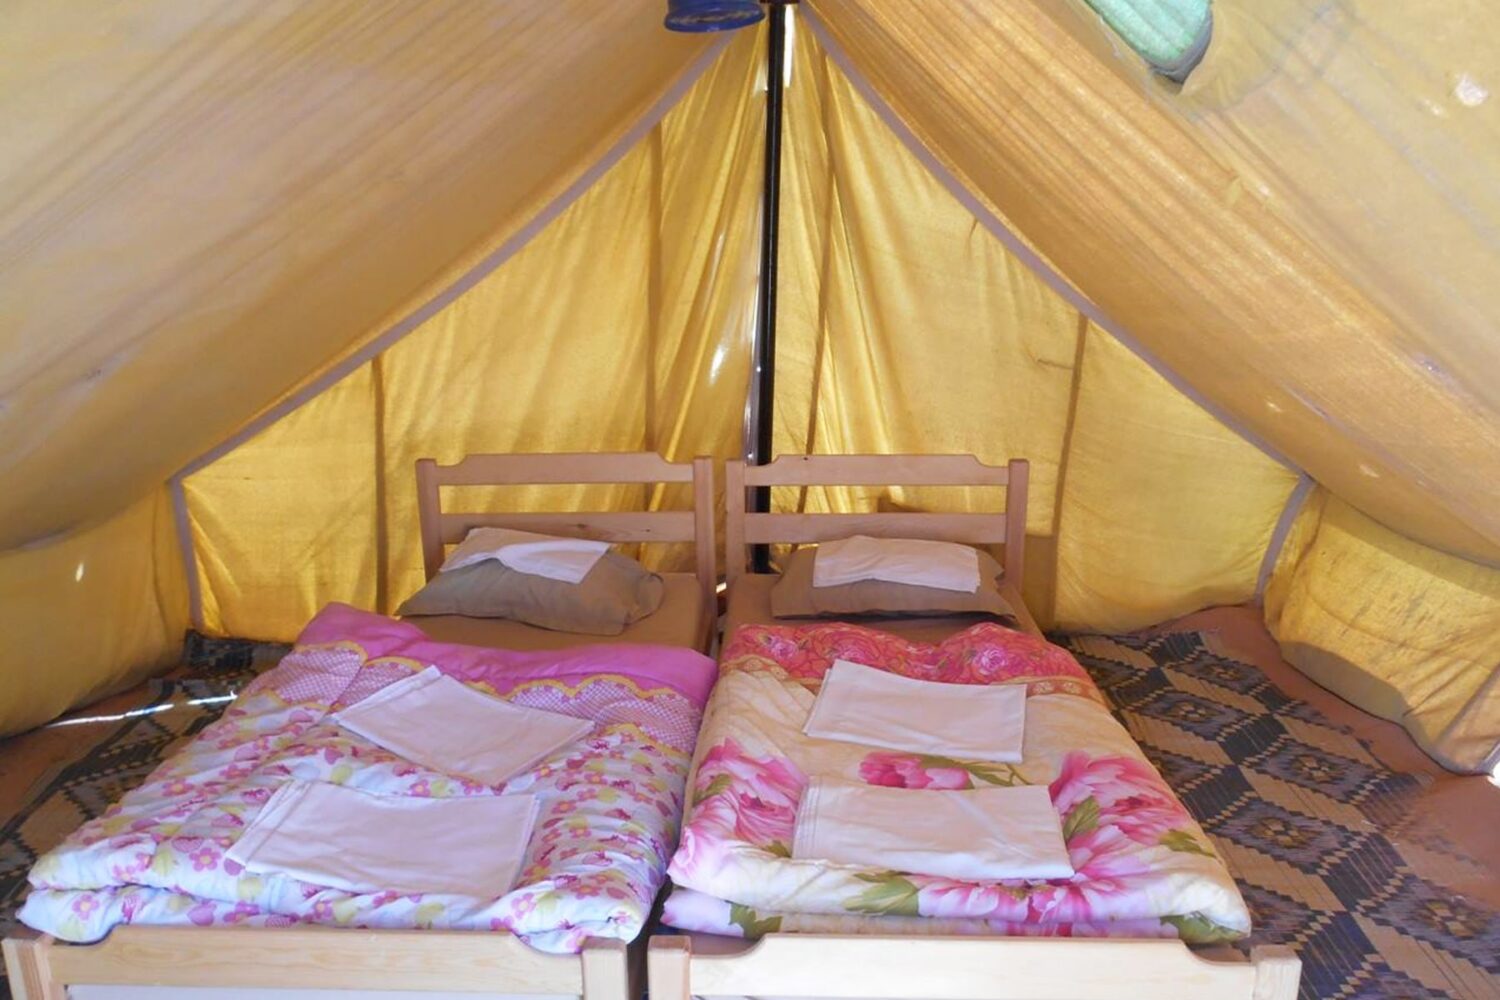 Zmela Saharan Camp and overnight in the desert